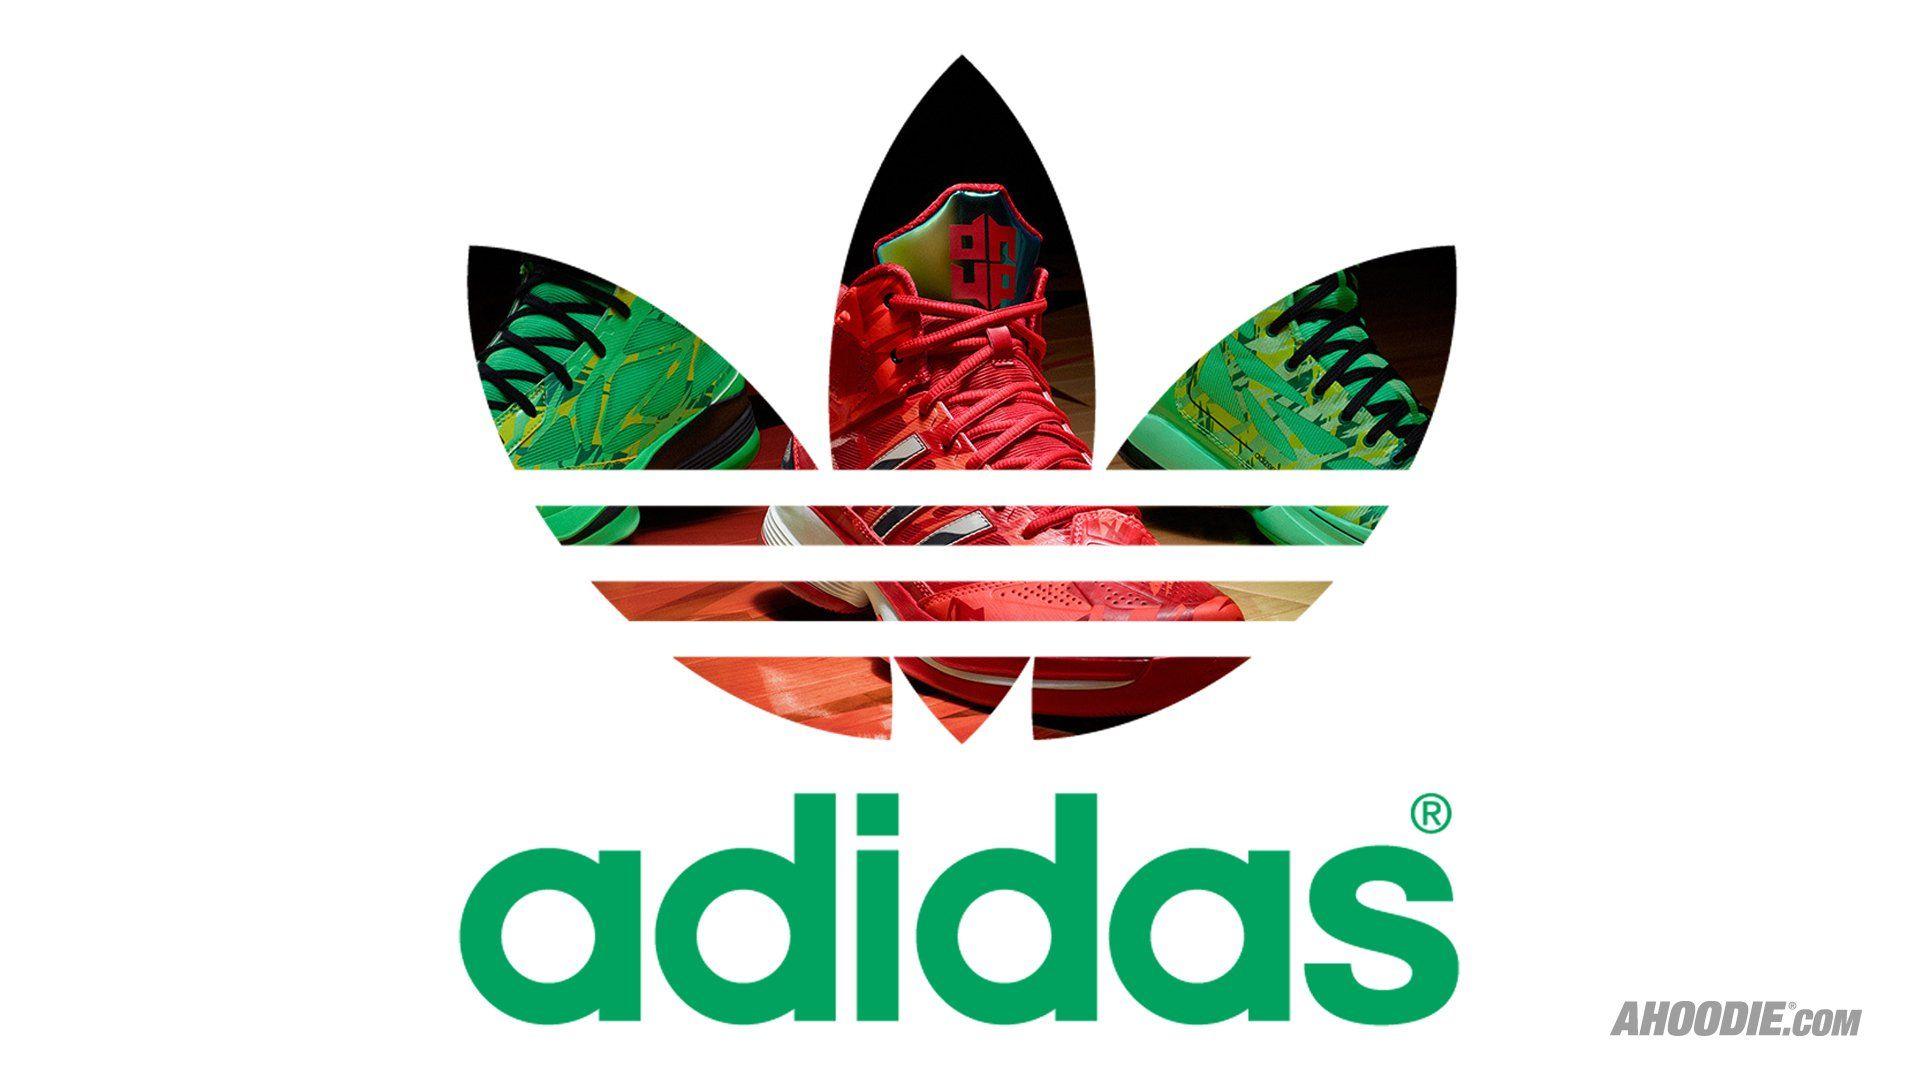 Camo Adidas Logo - Adidas HD PNG Transparent Adidas HD.PNG Images. | PlusPNG